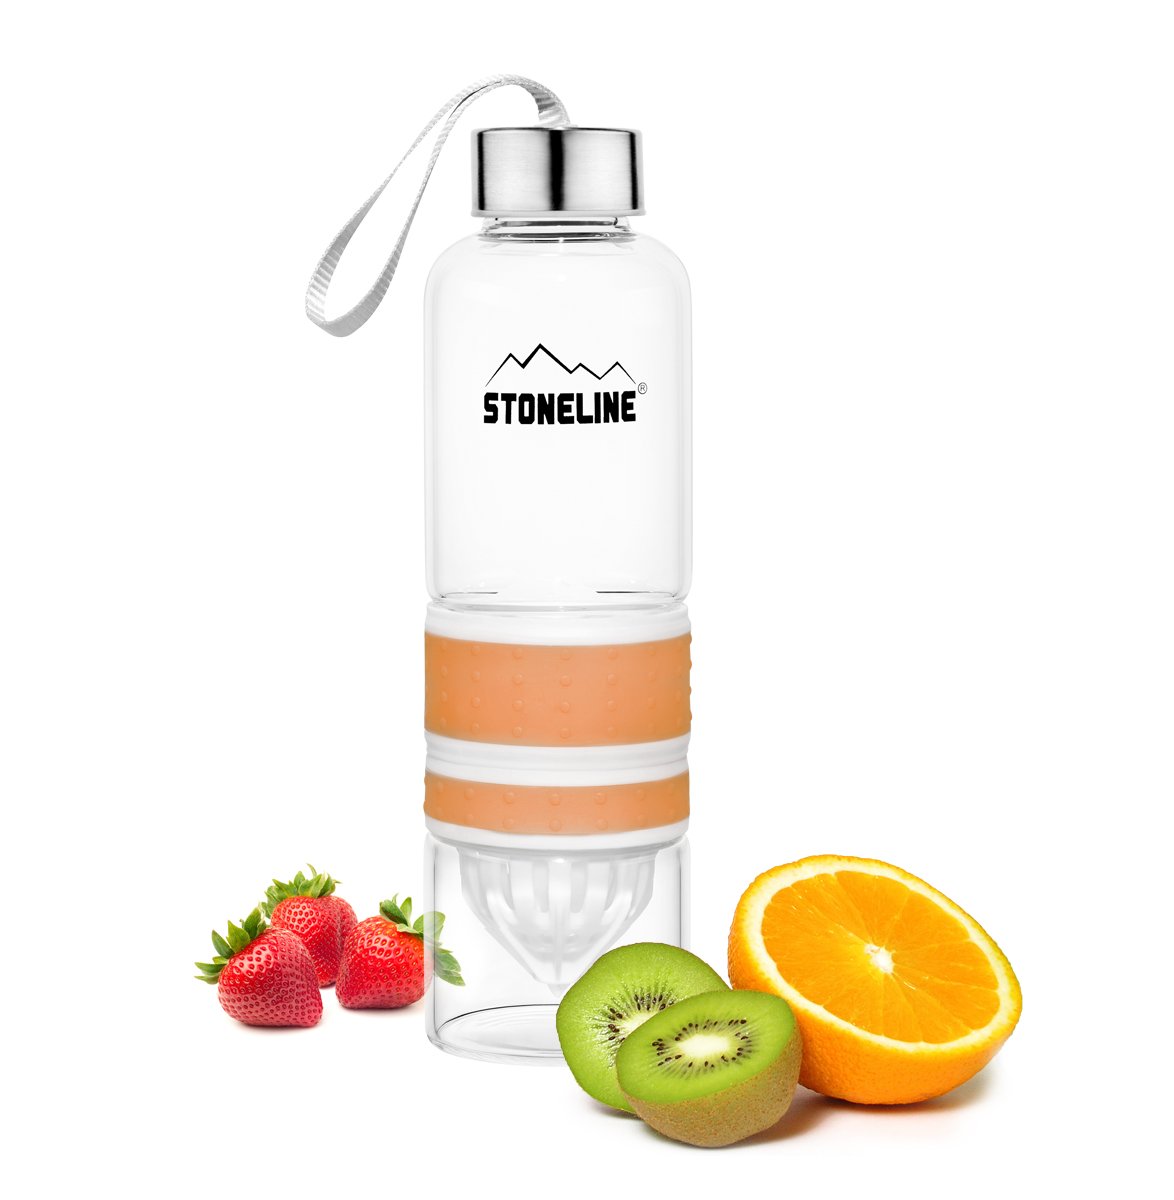 STONELINE® Botella 2 en 1 con exprimidor, naranja